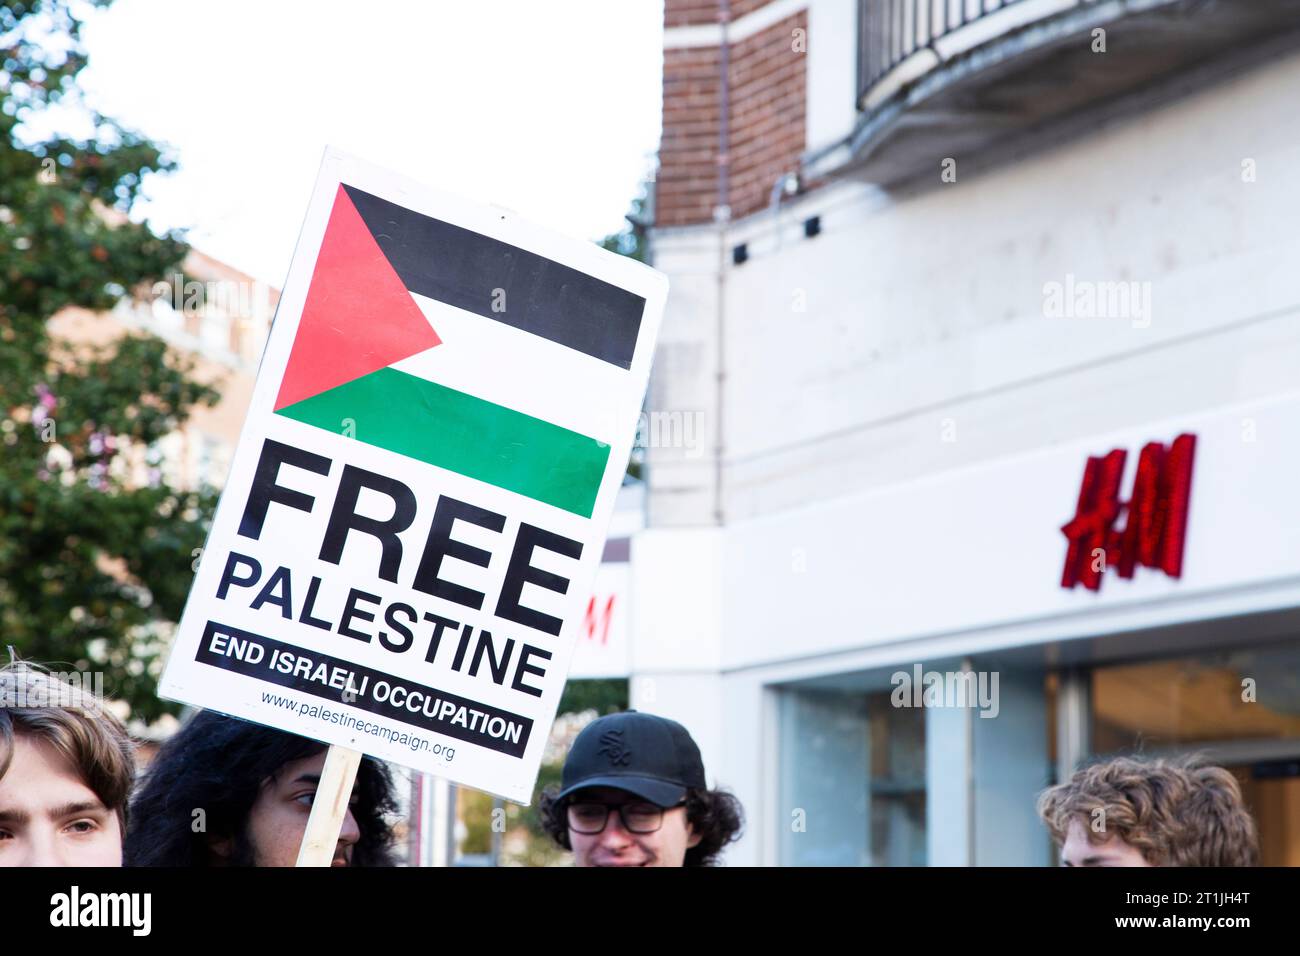 Freier palästinensischer Protest im Stadtzentrum von Exeter - kostenloses palästinensisches Schild neben dem H&M Shop Logo mit Köpfen Stockfoto